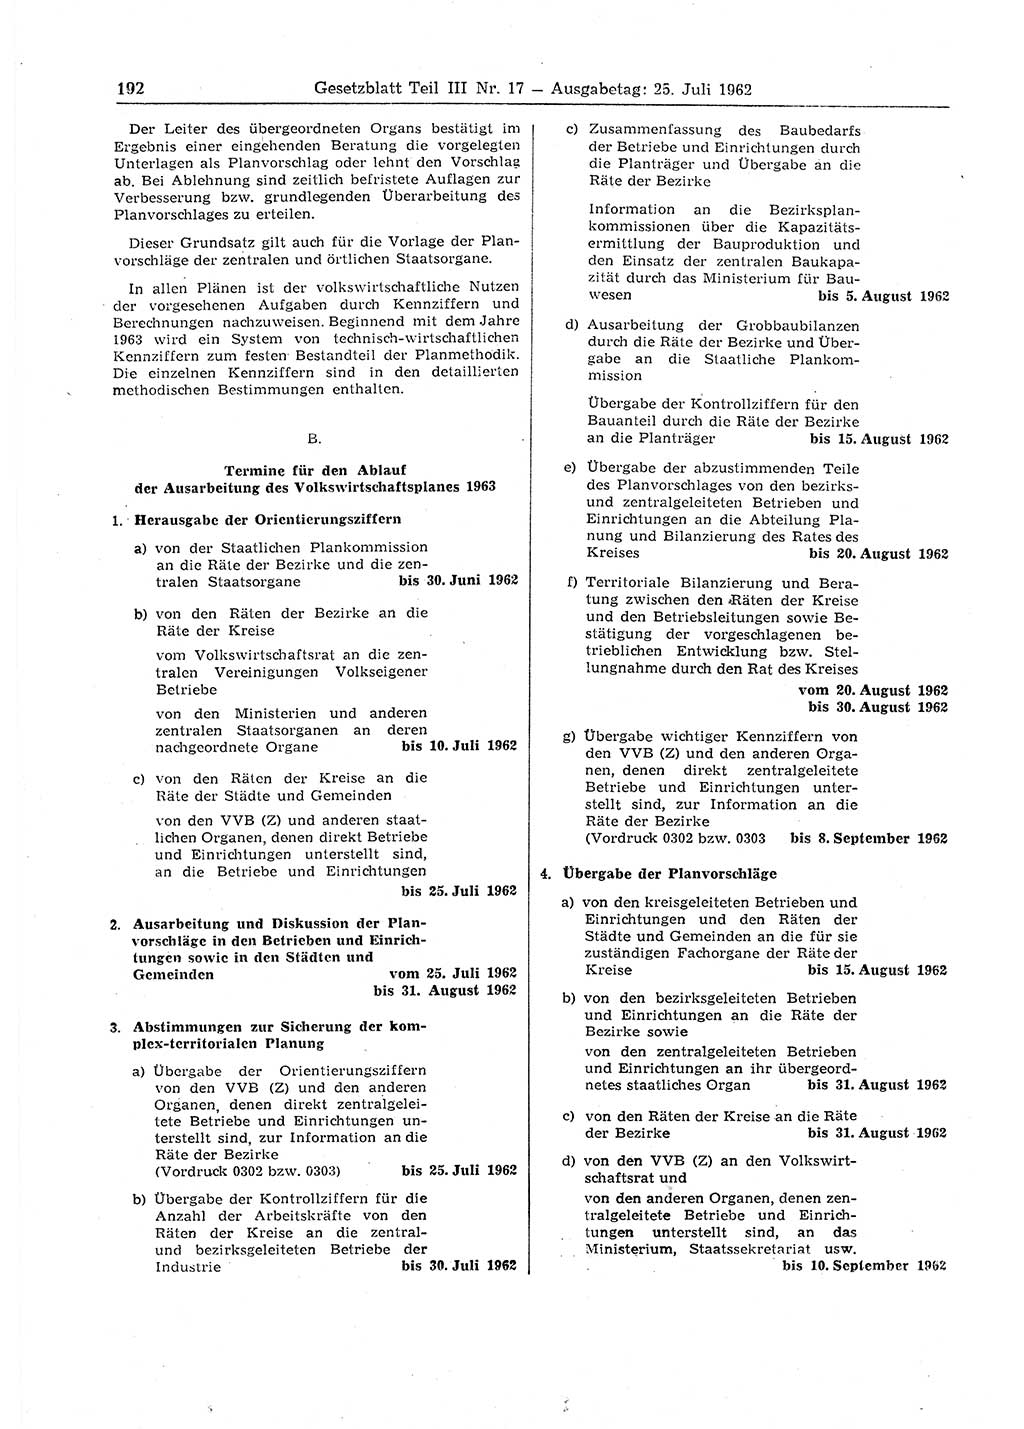 Gesetzblatt (GBl.) der Deutschen Demokratischen Republik (DDR) Teil ⅠⅠⅠ 1962, Seite 192 (GBl. DDR ⅠⅠⅠ 1962, S. 192)